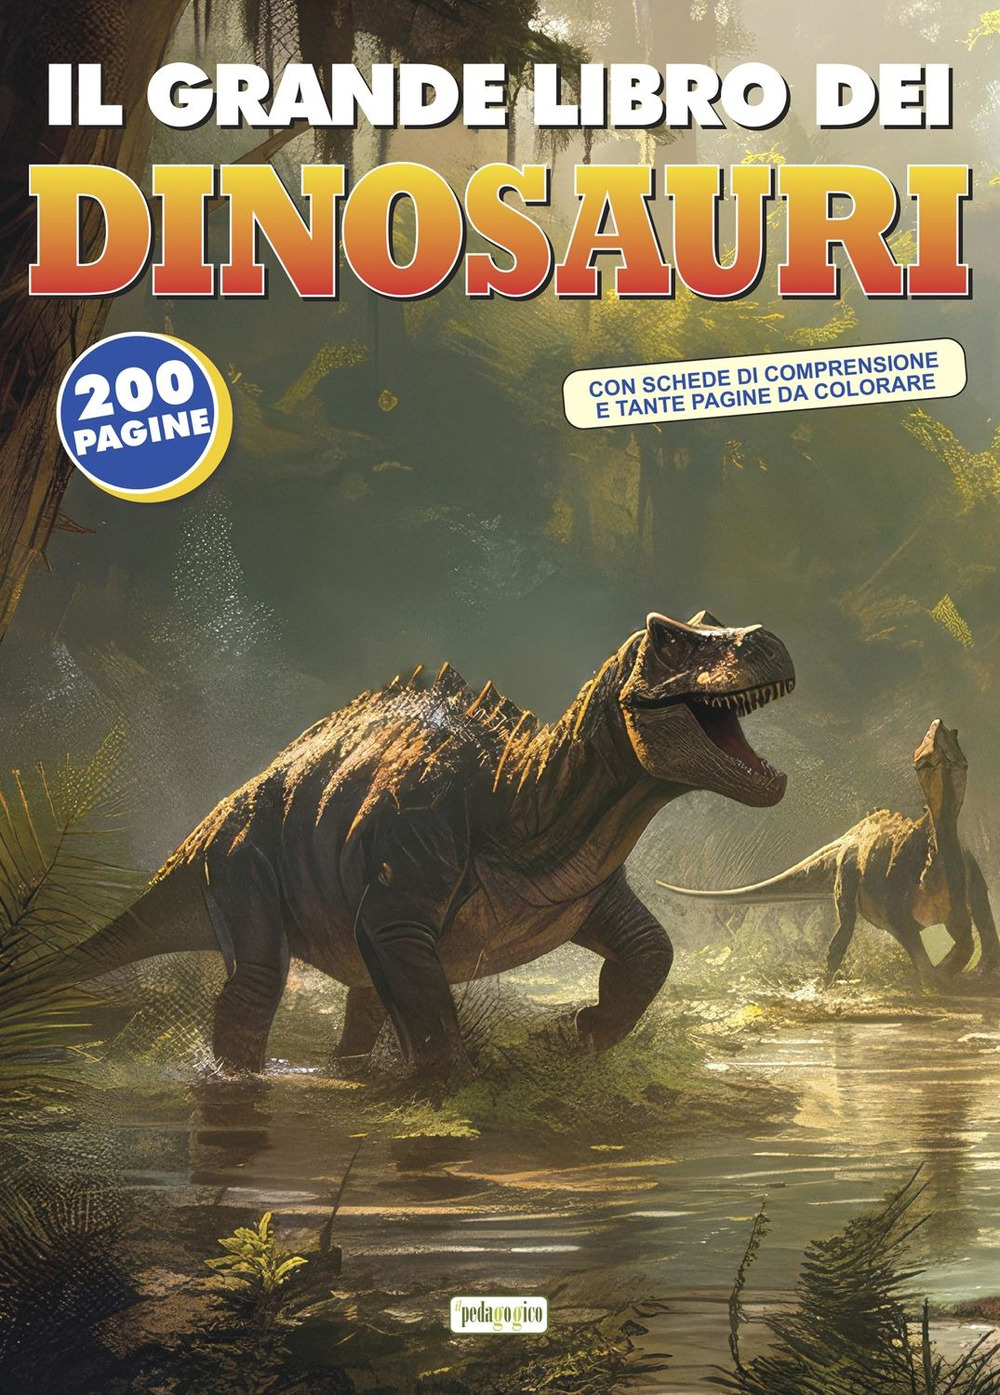 Image of Il grande libro dei dinosauri